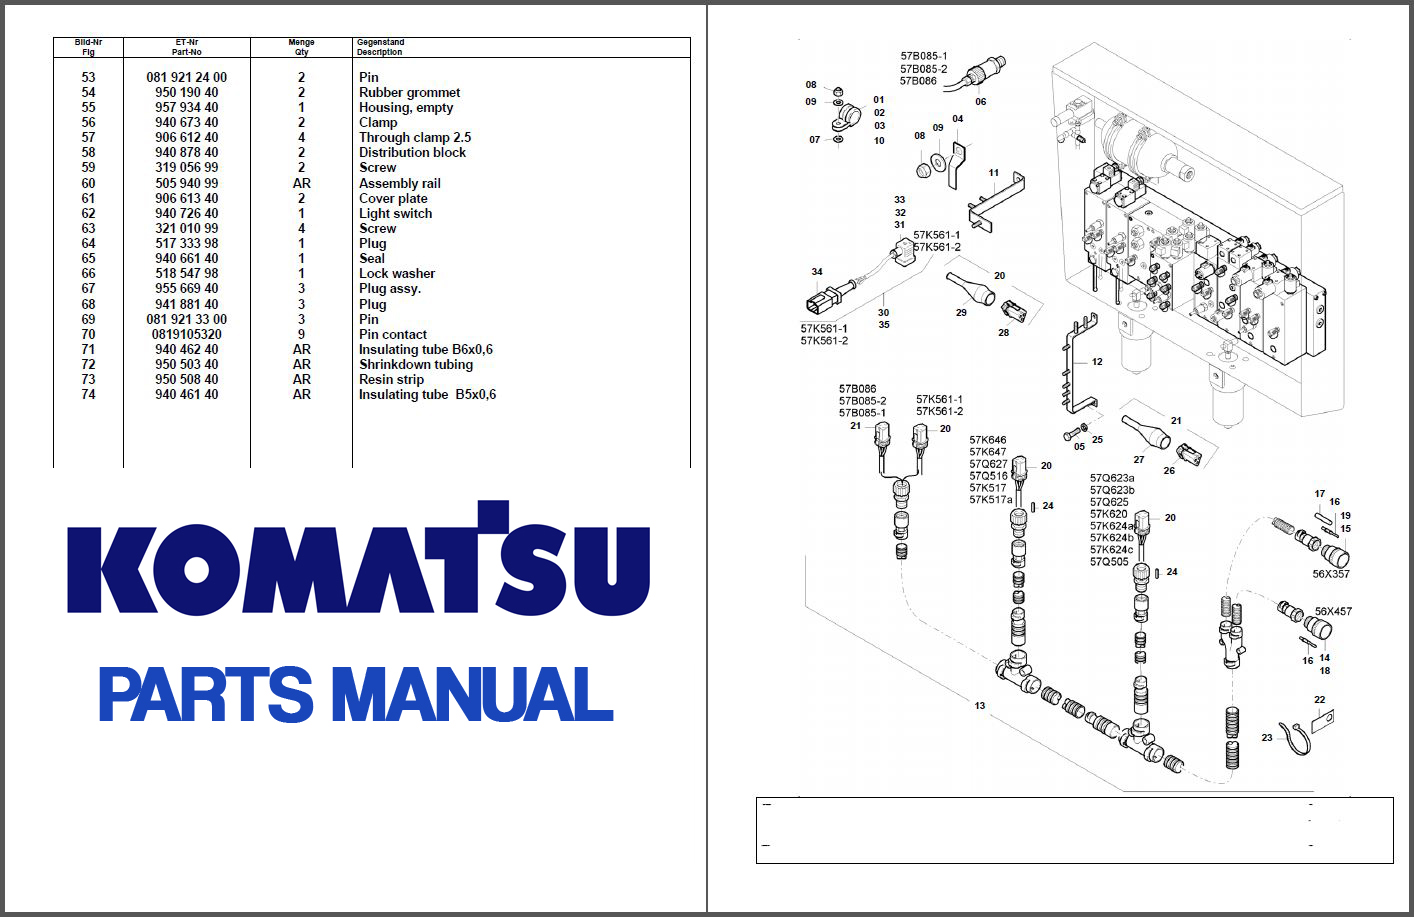 Komatsu Pc 200 Parts Manual